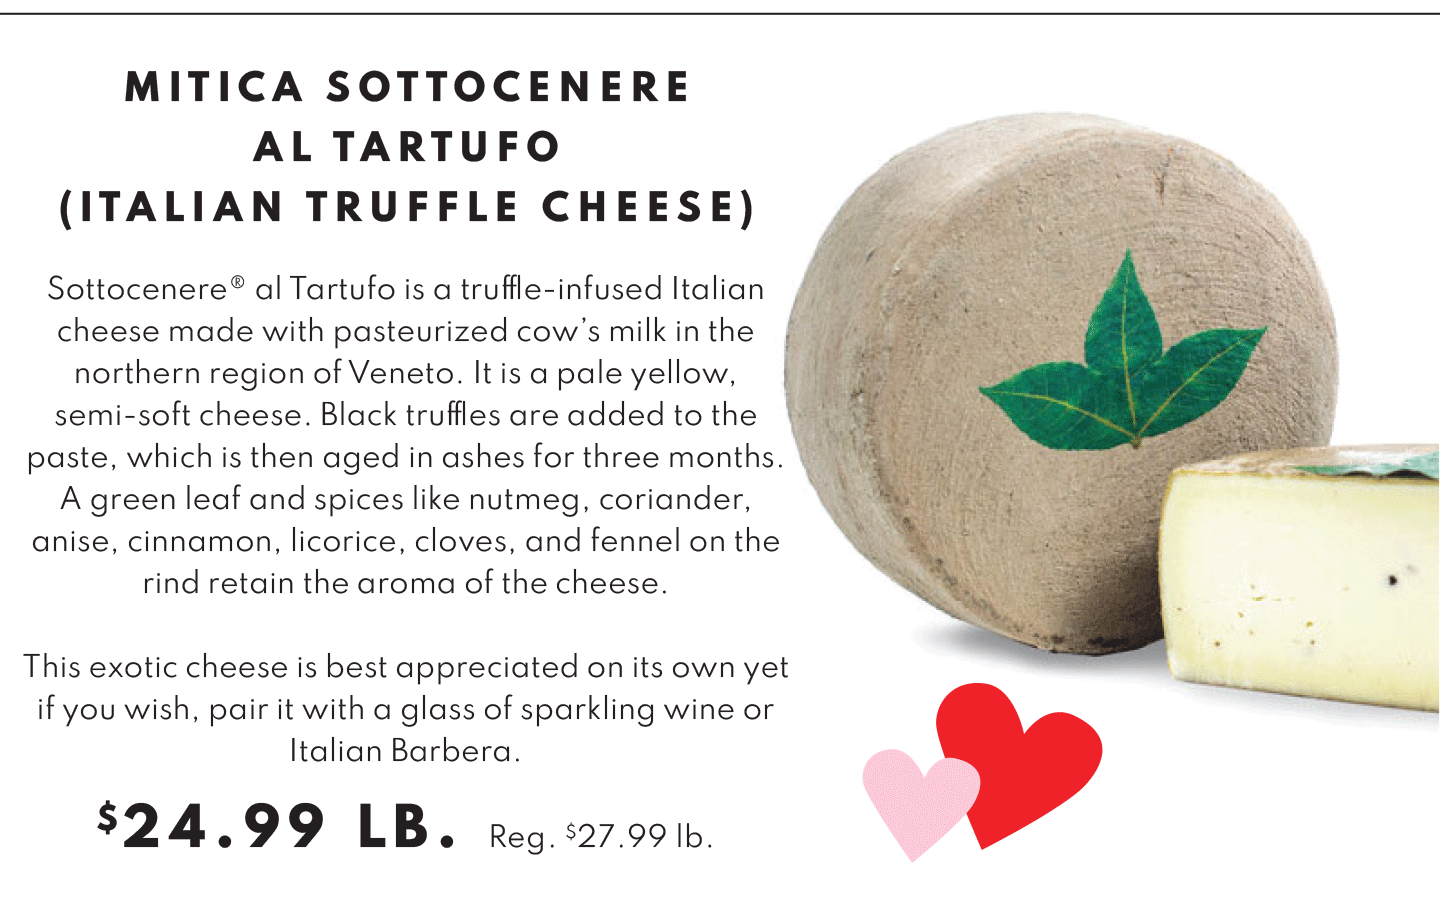 Mitica Sottocenere Al Tartufo (Italian Truffle Cheese) - $24.99 per pound